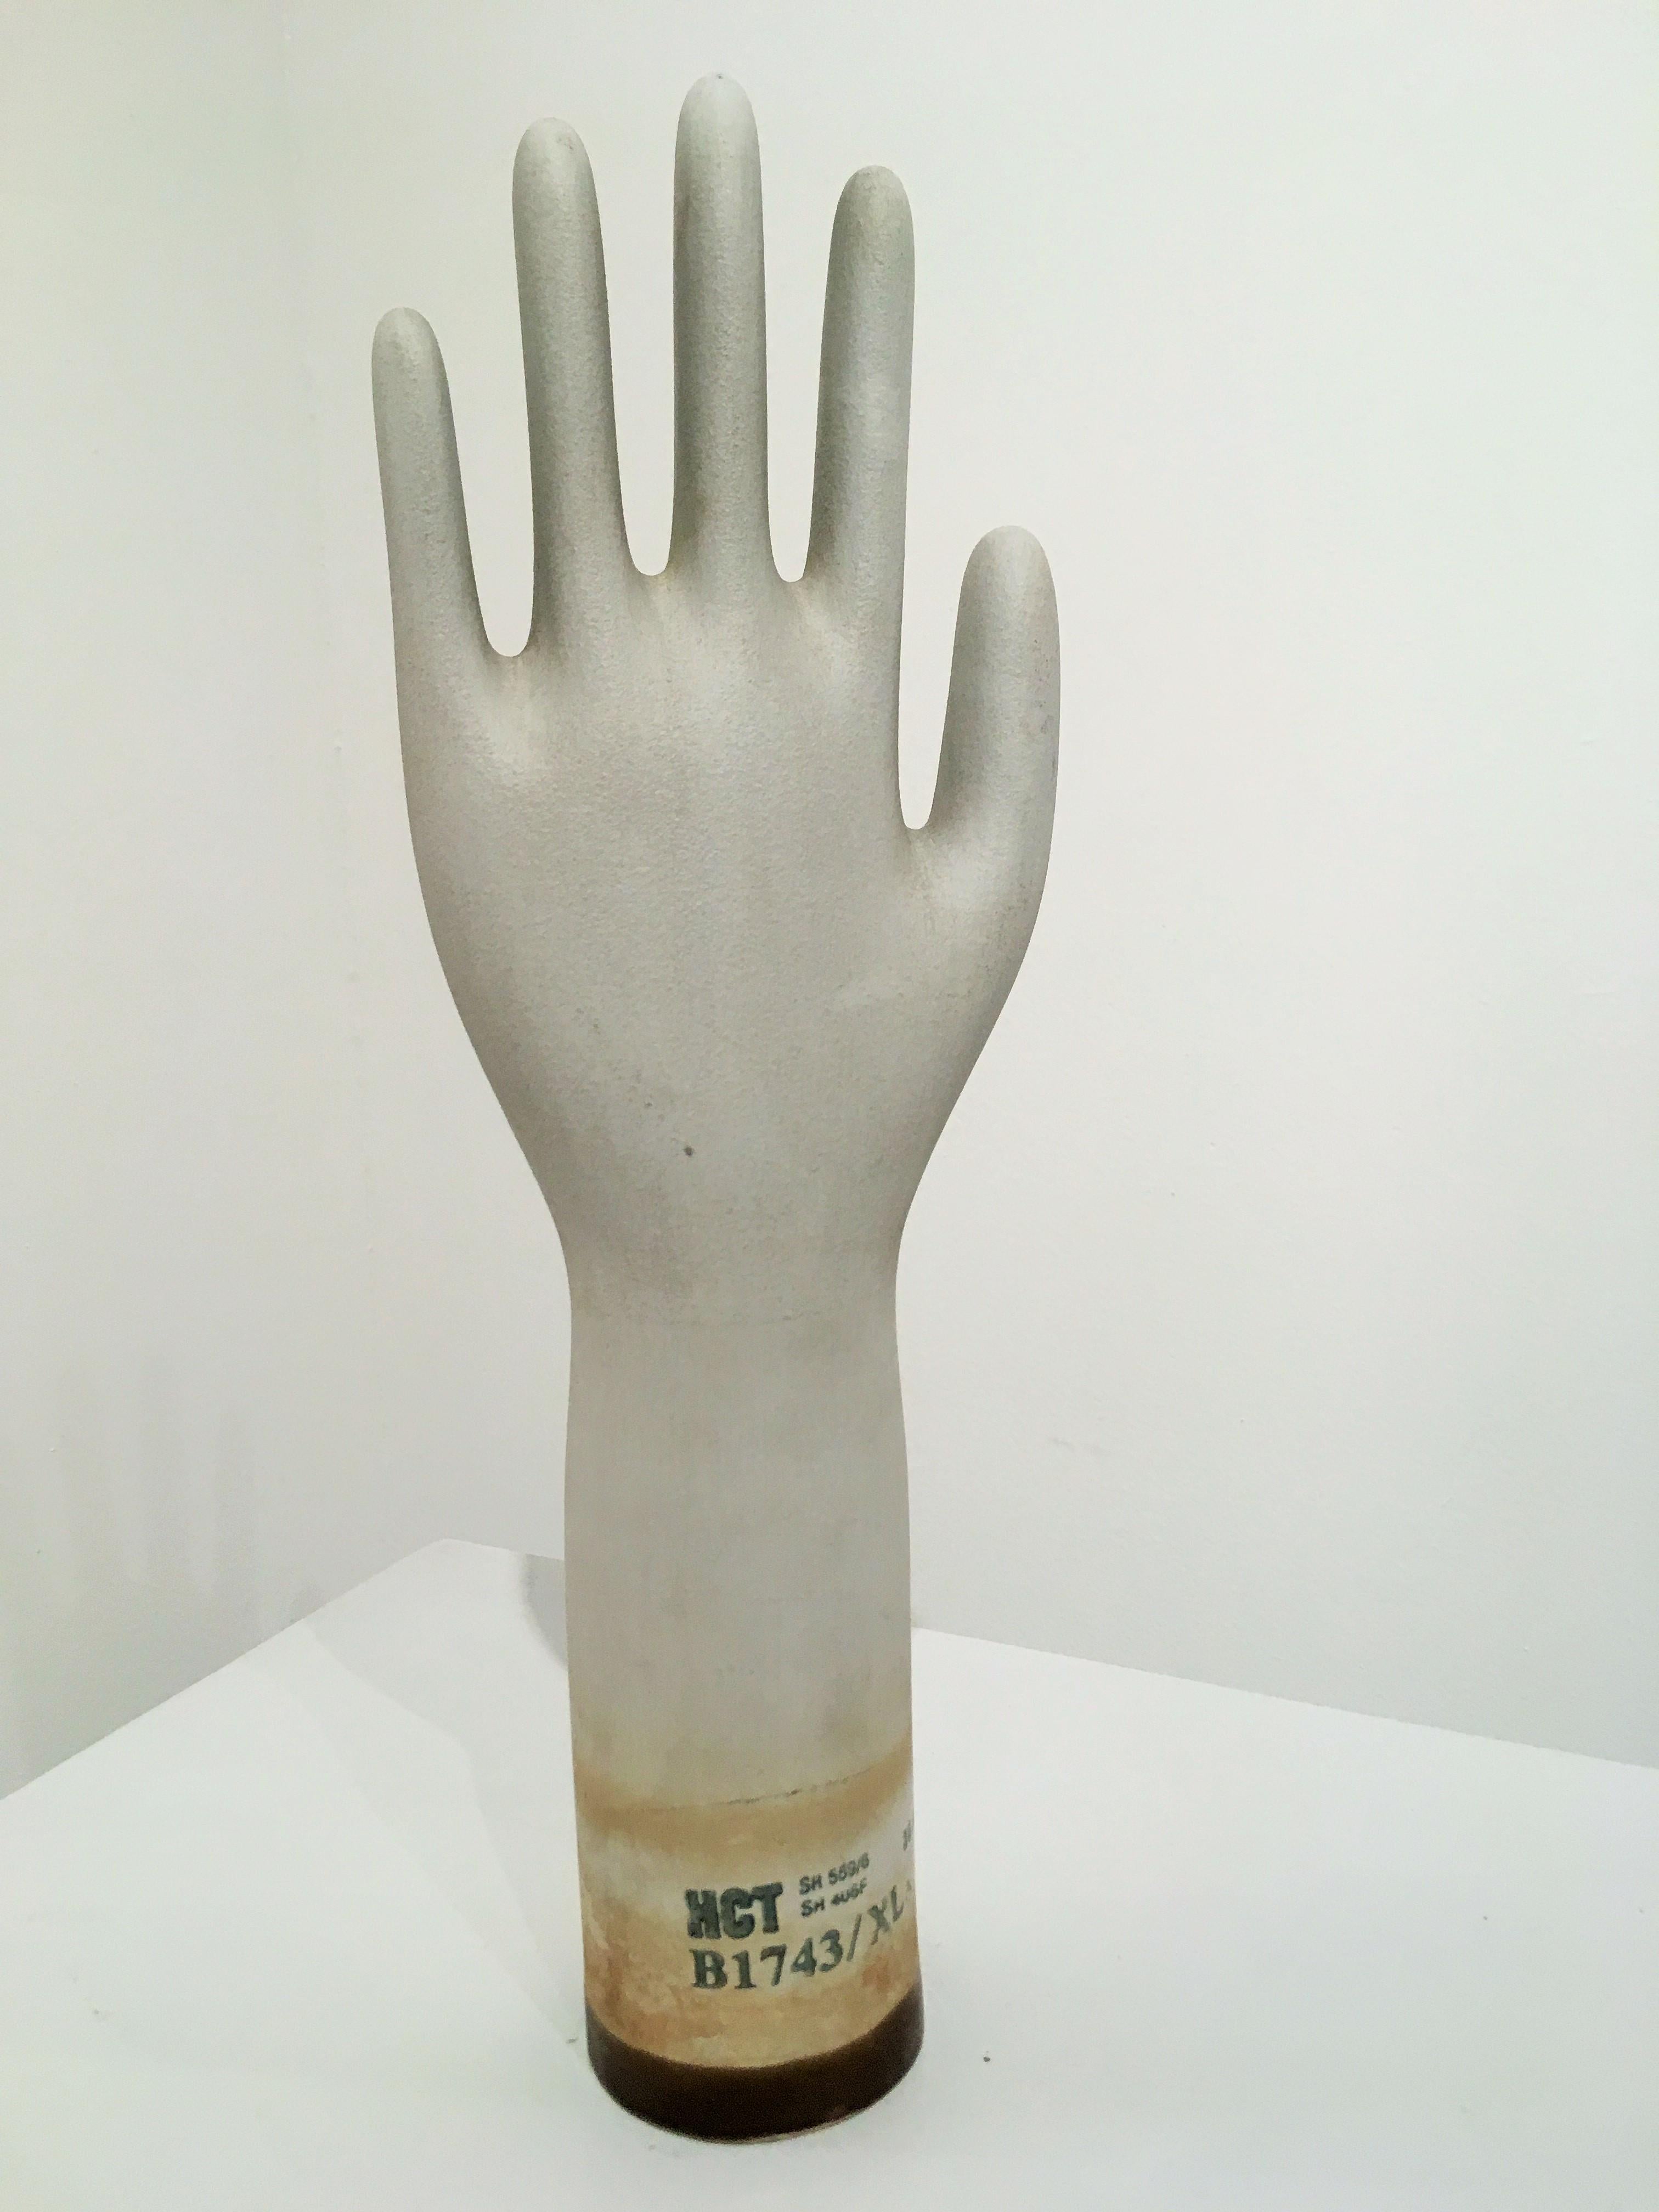 Satz von drei Formen für Industriehandschuhe, die sich hervorragend als Skulpturen eignen. Jeder Handschuh ist beschriftet und datiert: Einer ist mit Januar und die anderen beiden mit August datiert. Die Handschuhe weisen Kratzer auf, die Anzeichen